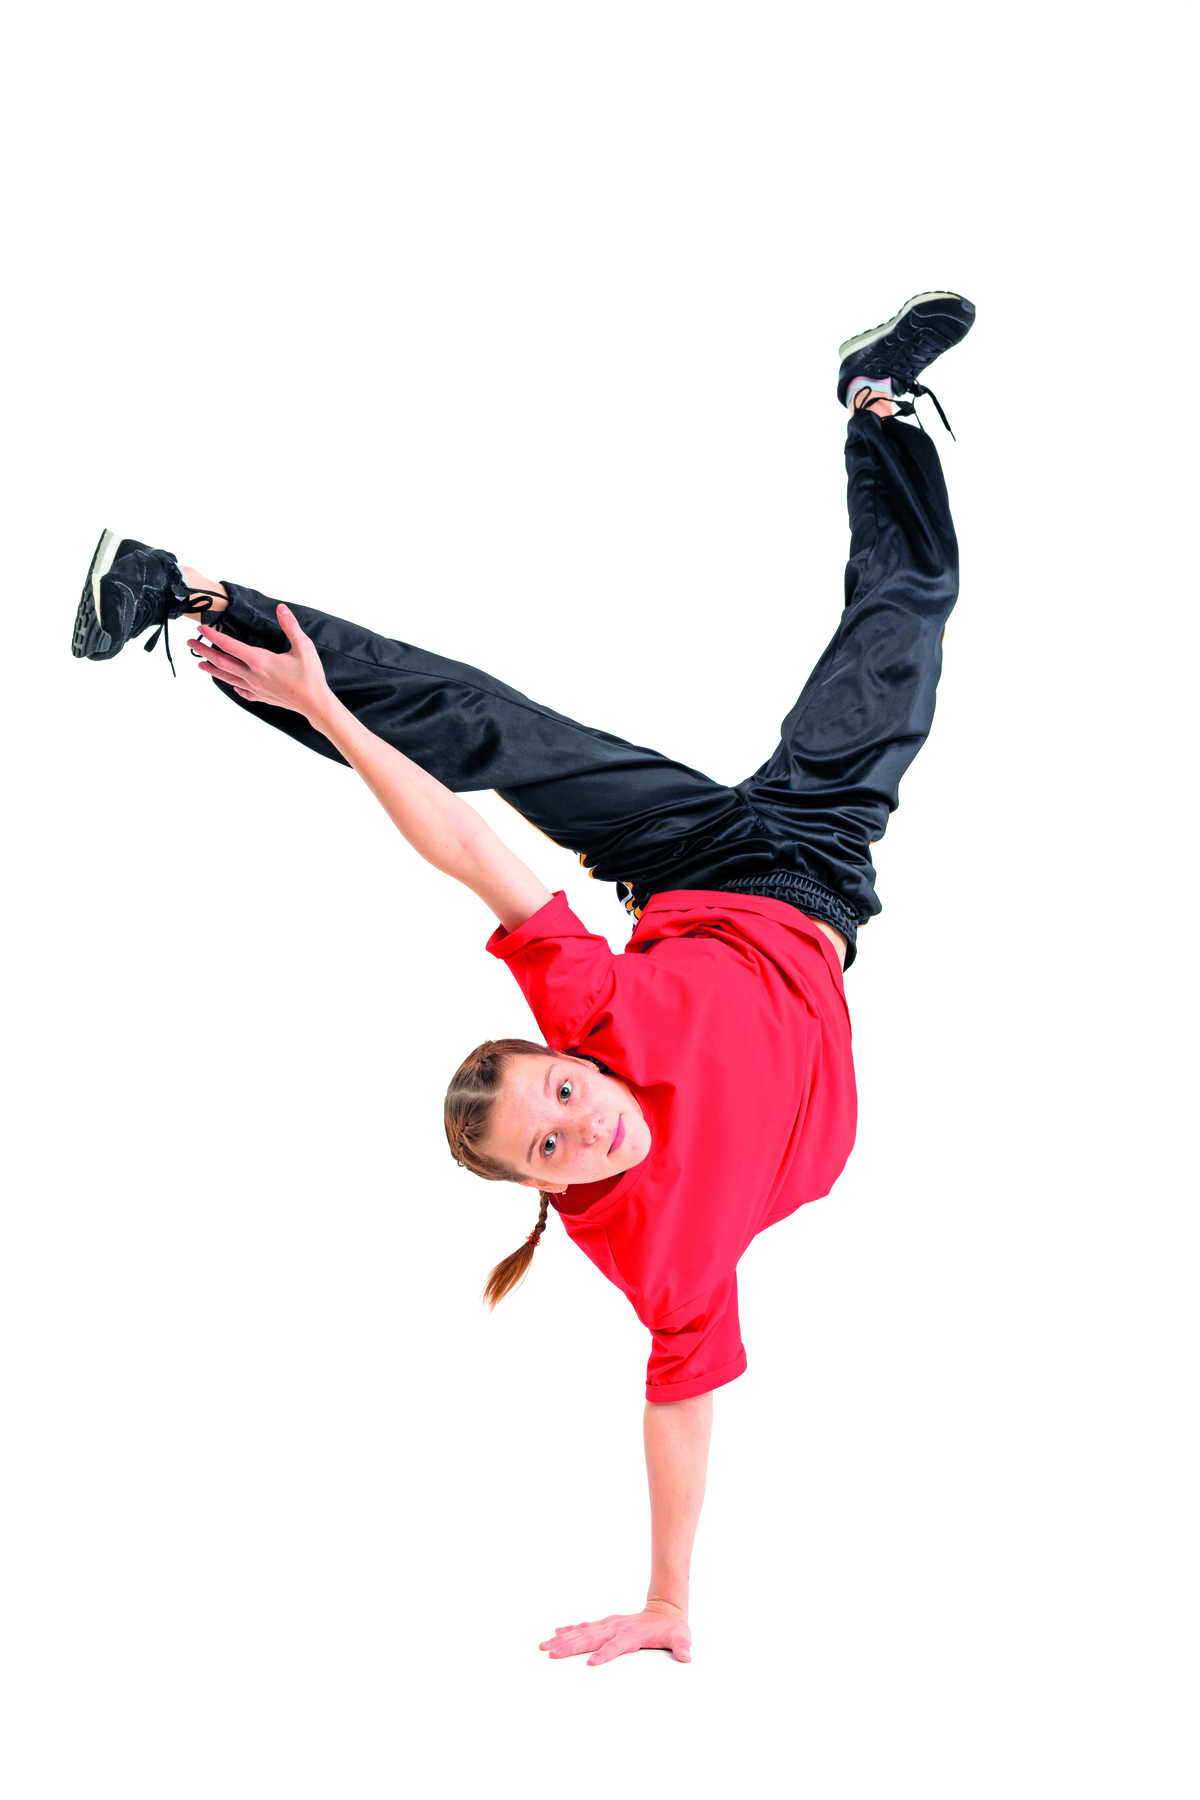 Fotografia. Menina usando blusa vermelha, calça e tênis pretos. Ela está com a mão direita apoiada no chão, as duas pernas levantadas e afastadas e com o braço esquerdo esticado na direção do pé.